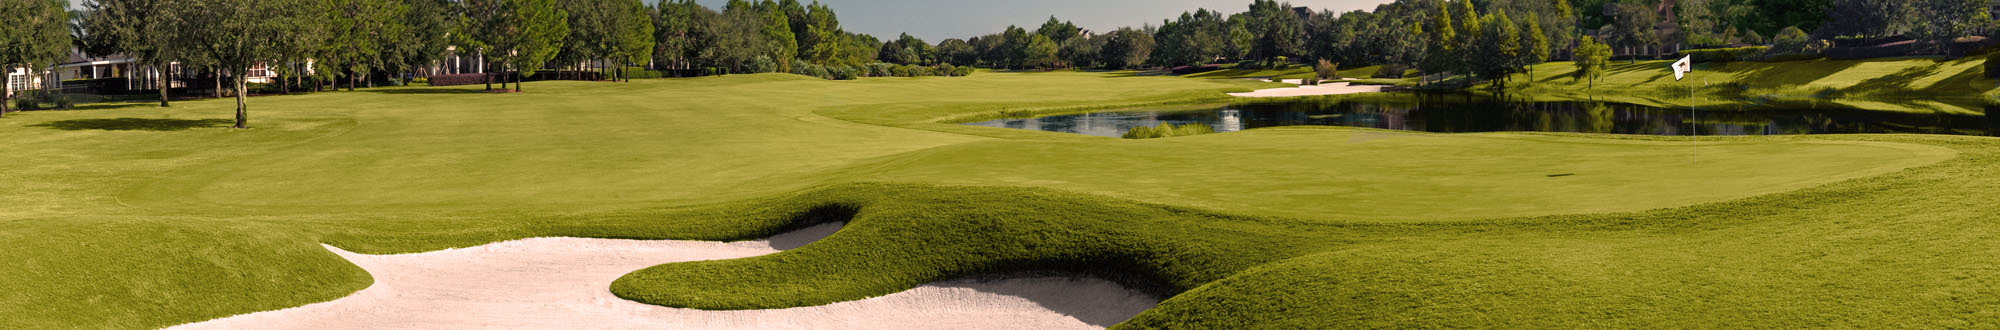 Monterey Park Golf Course Image Thumbnail